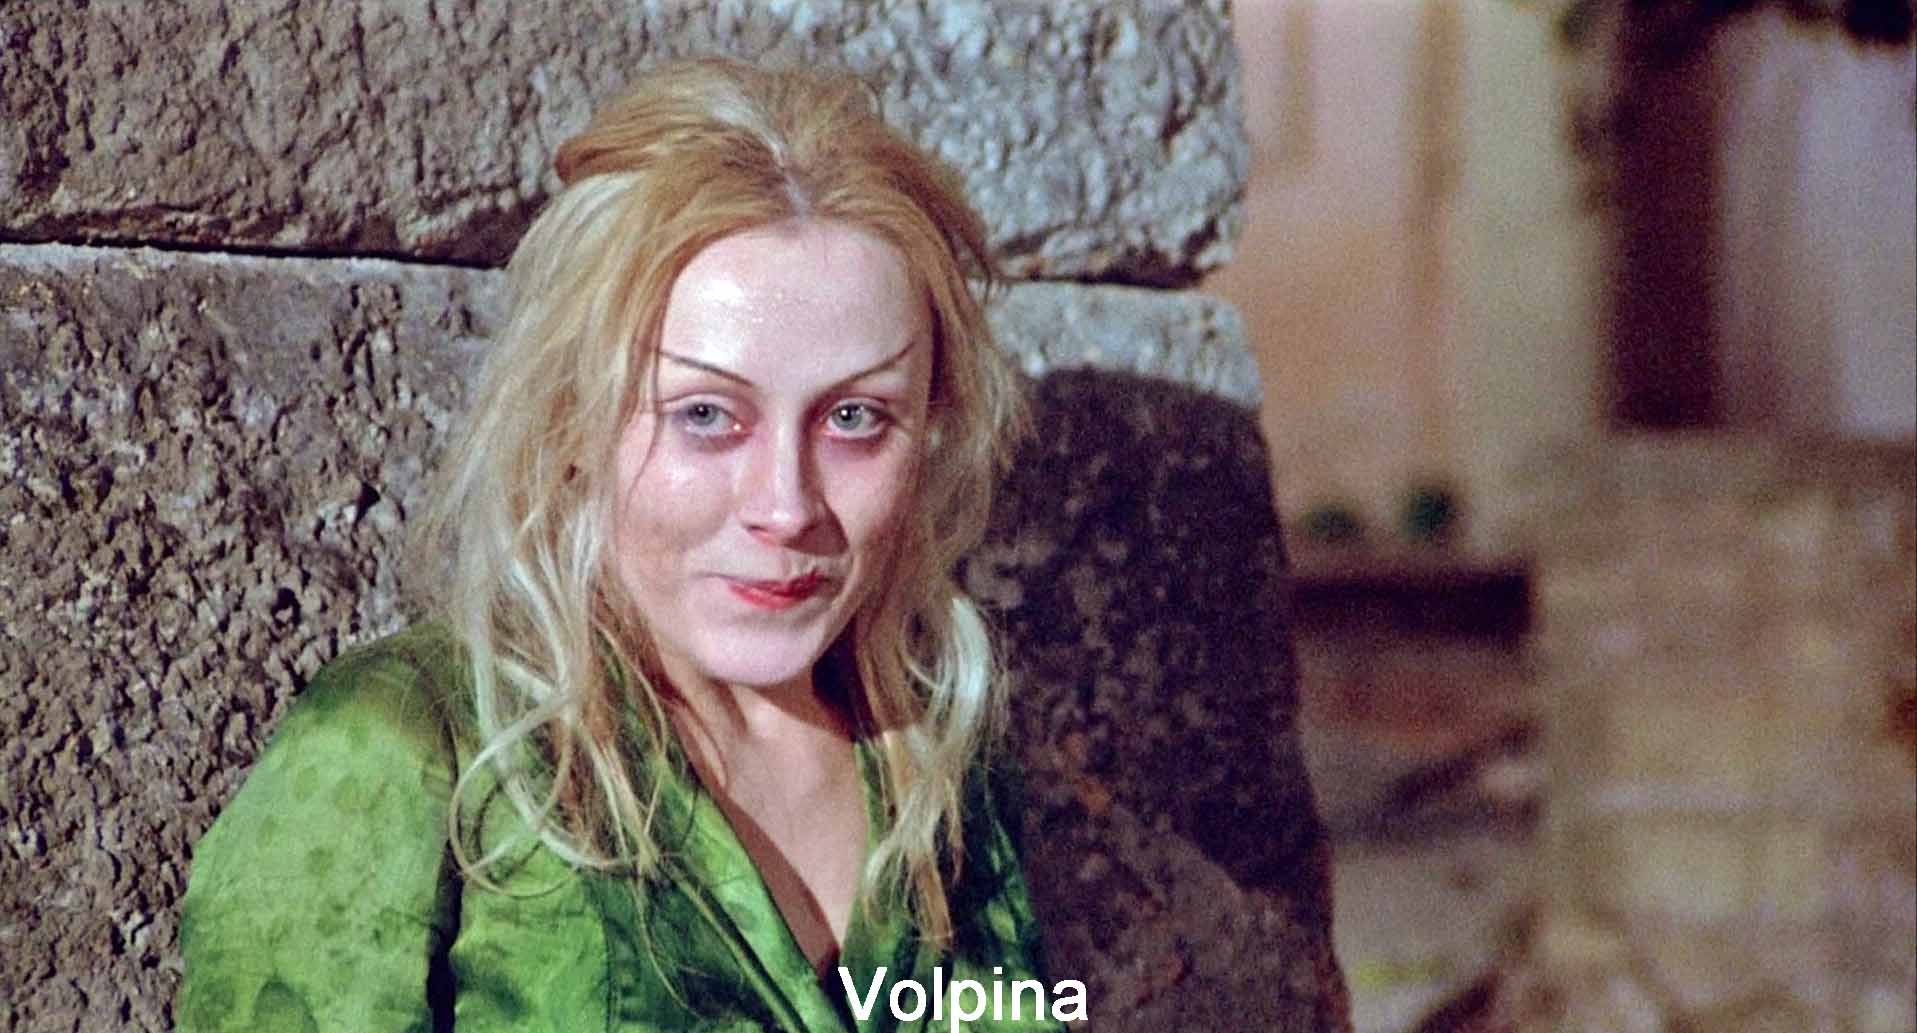 Volpina